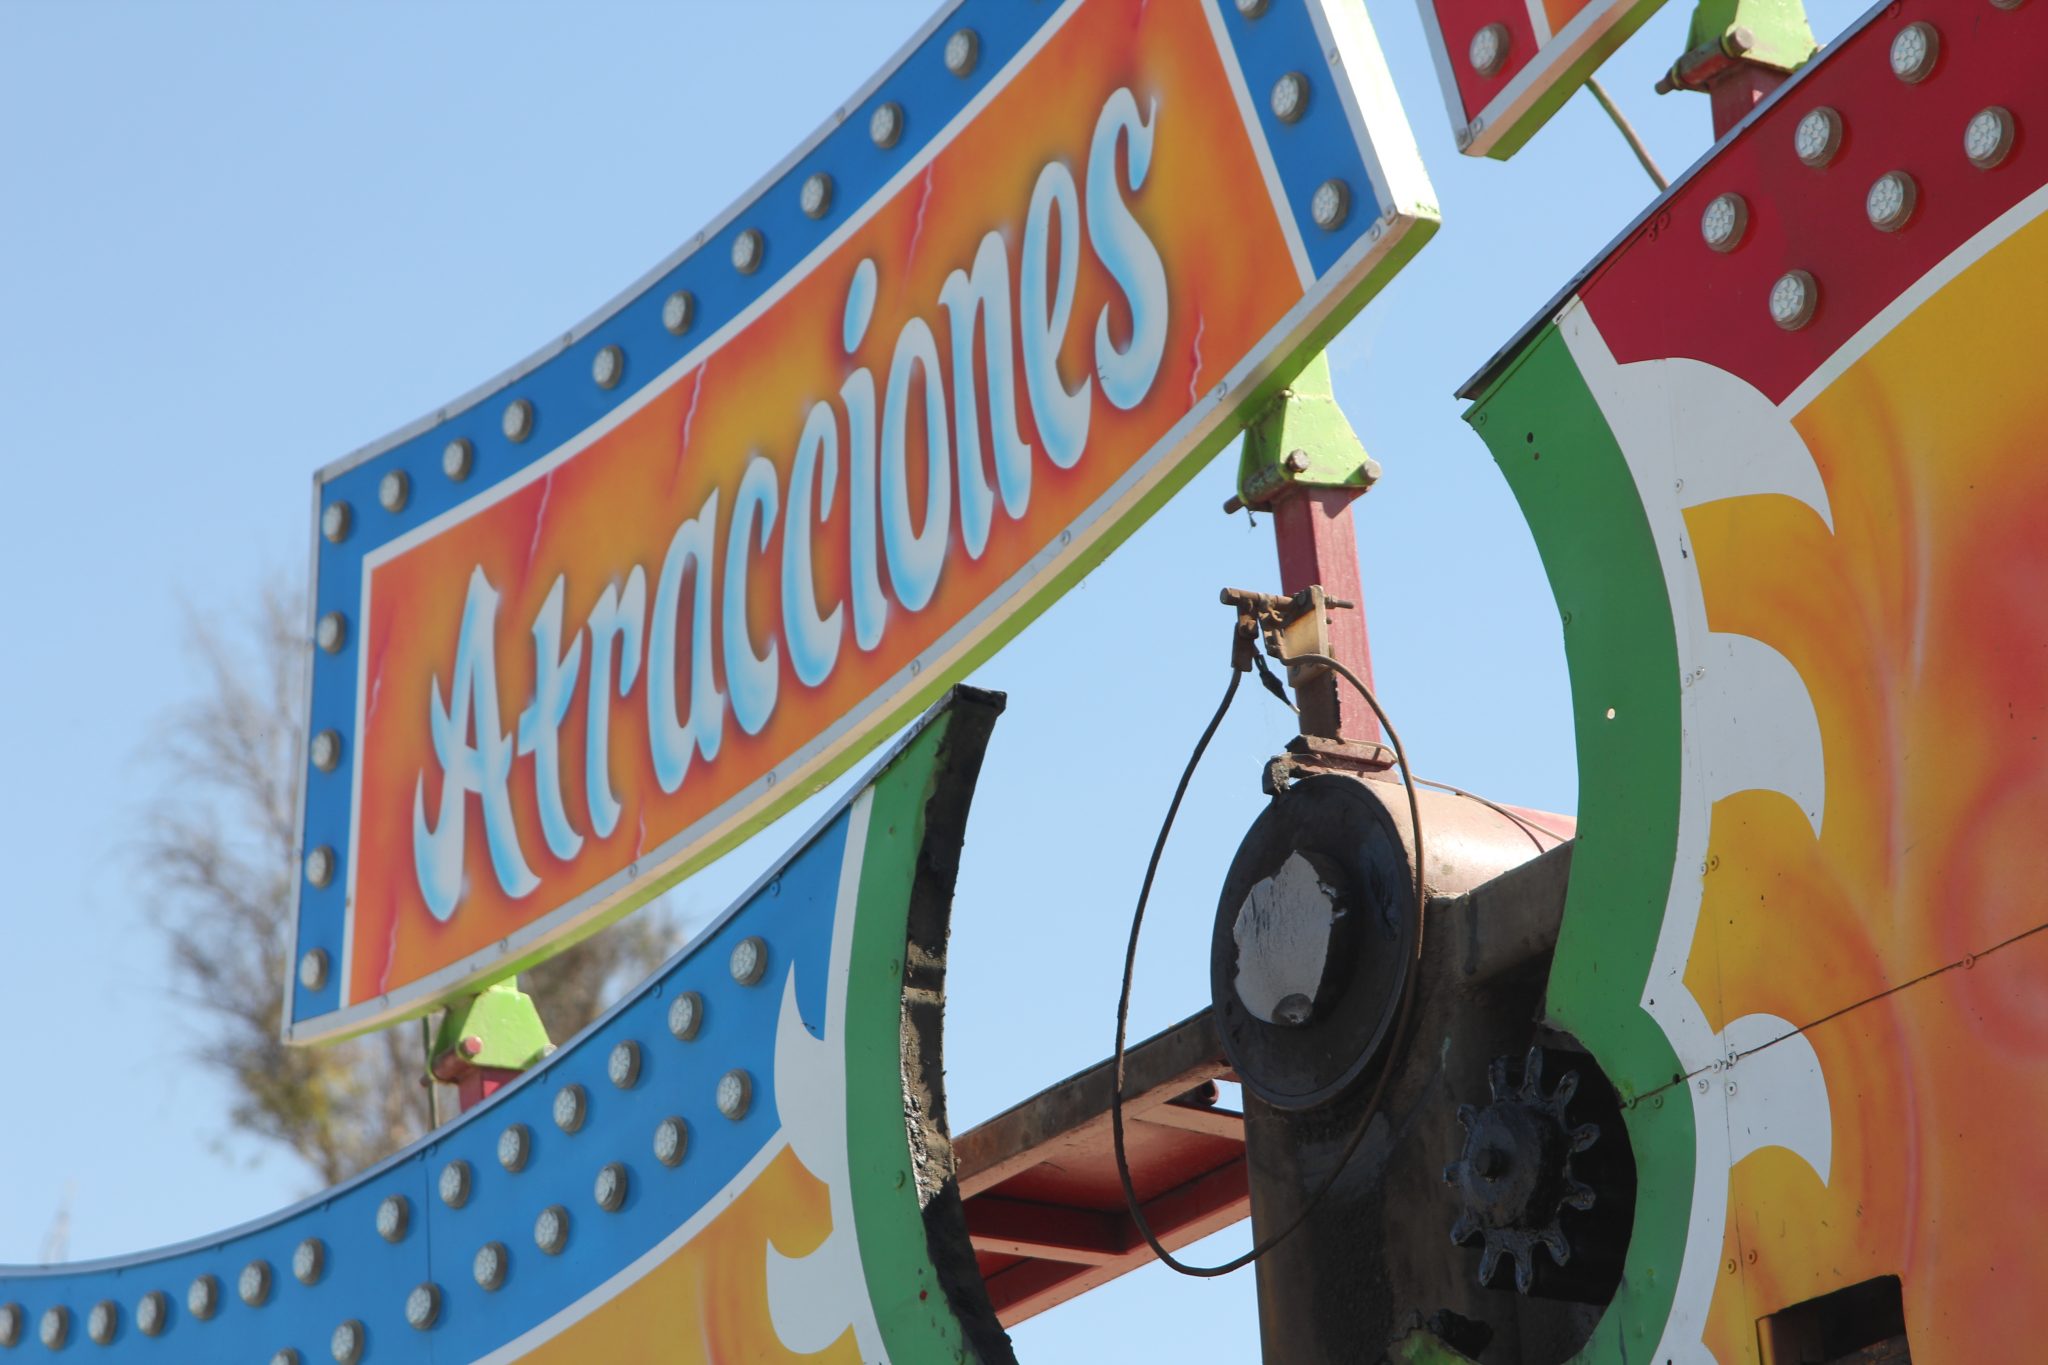 Juegos mecánicos trabajaban sin permiso en el Parque Morelos (5)